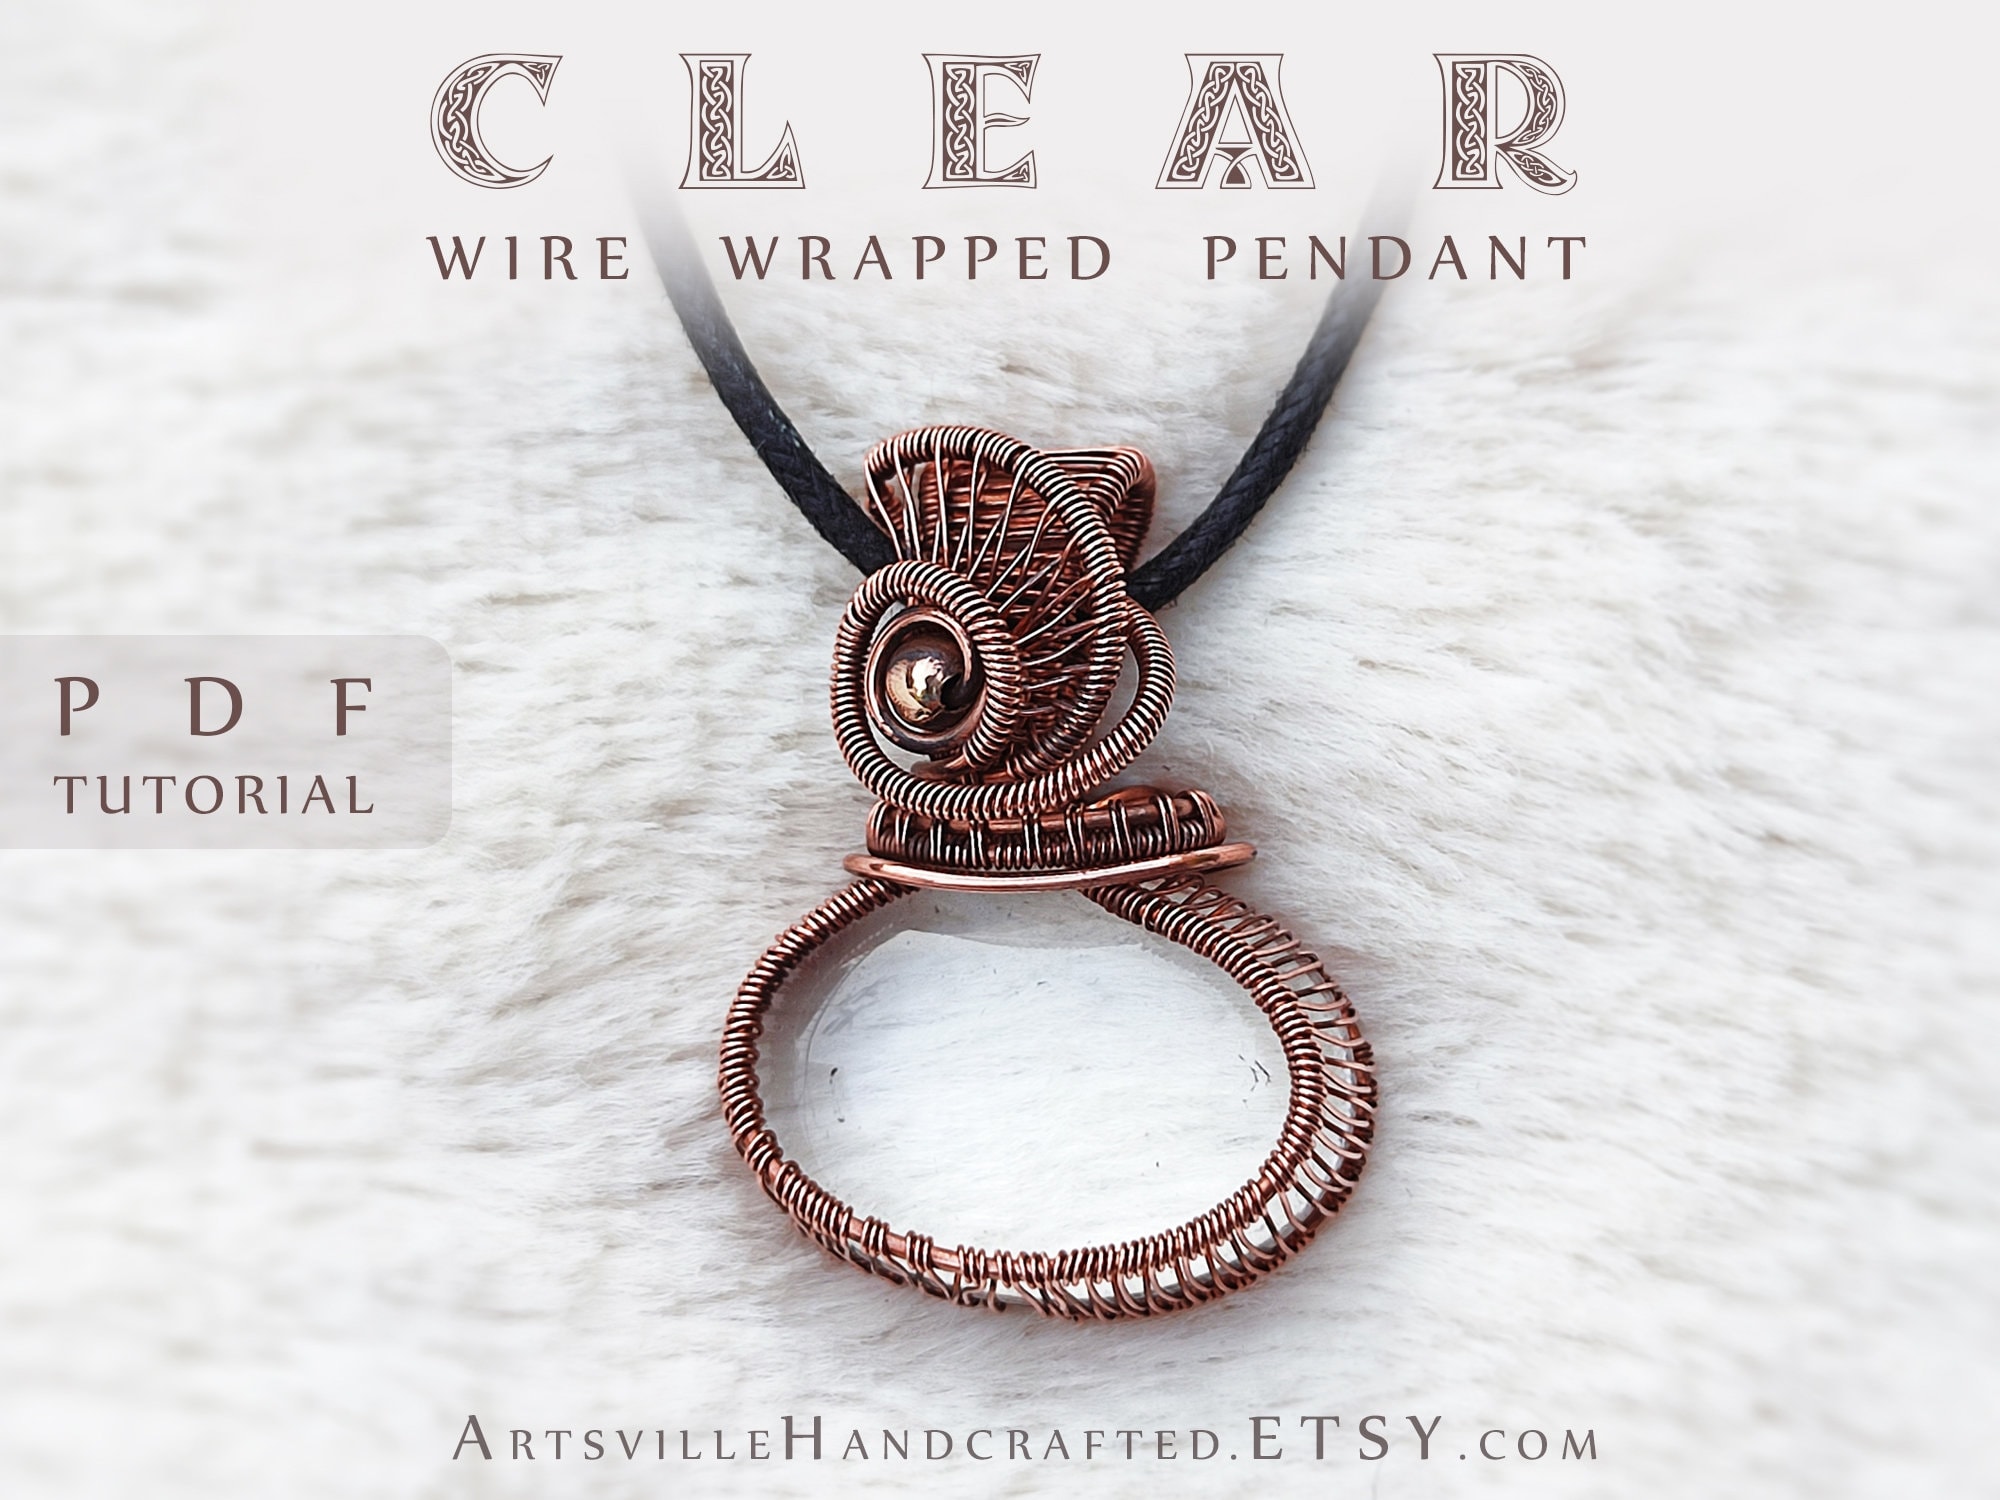 28 Gauge Round Dead Soft Copper Wire: Wire Jewelry, Wire Wrap Tutorials